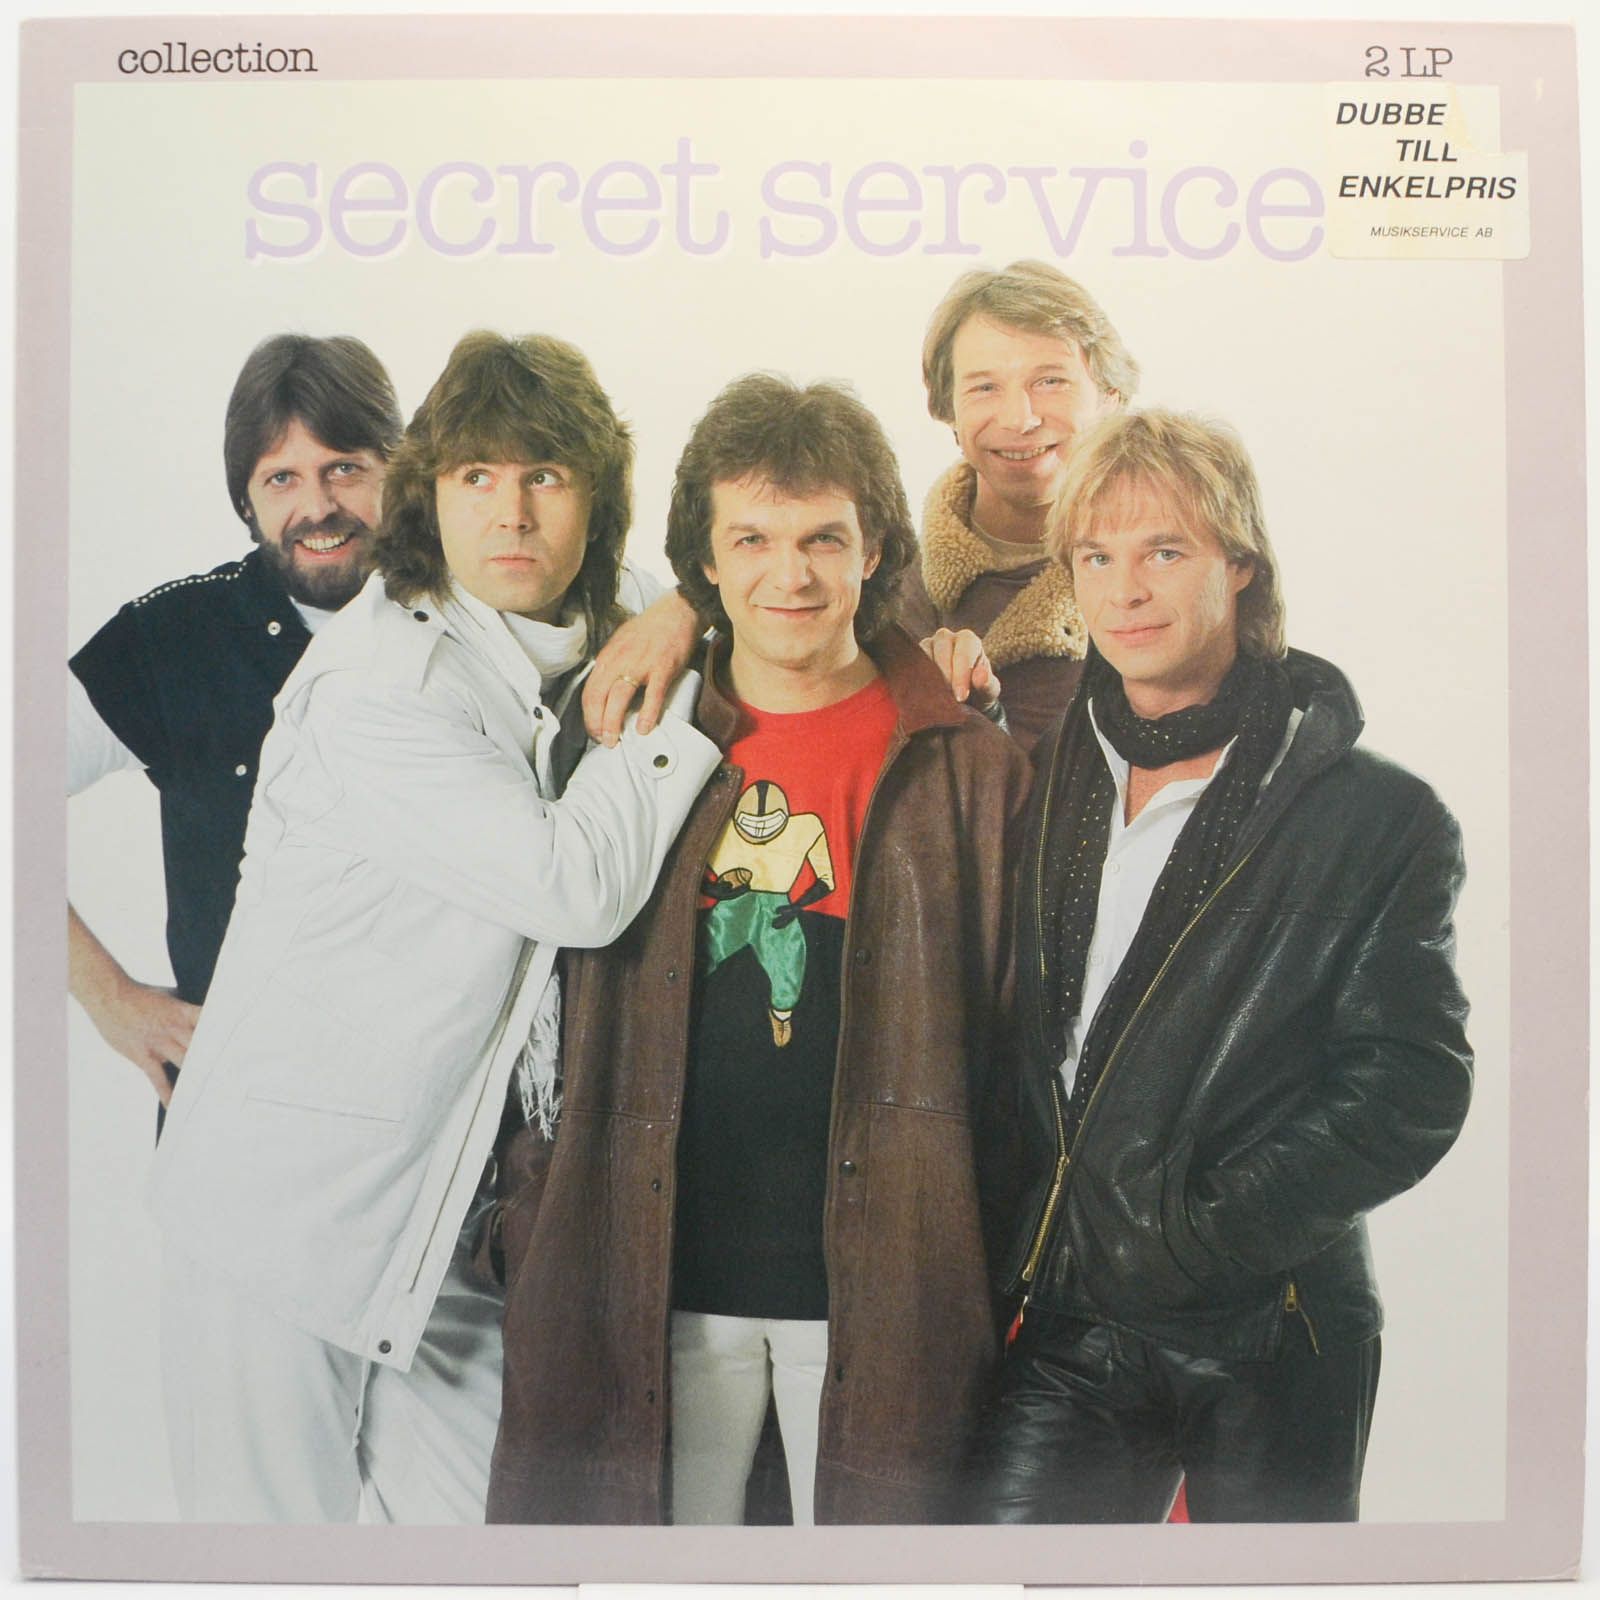 Secret Service — Collection (2LP, Sweden), 1987